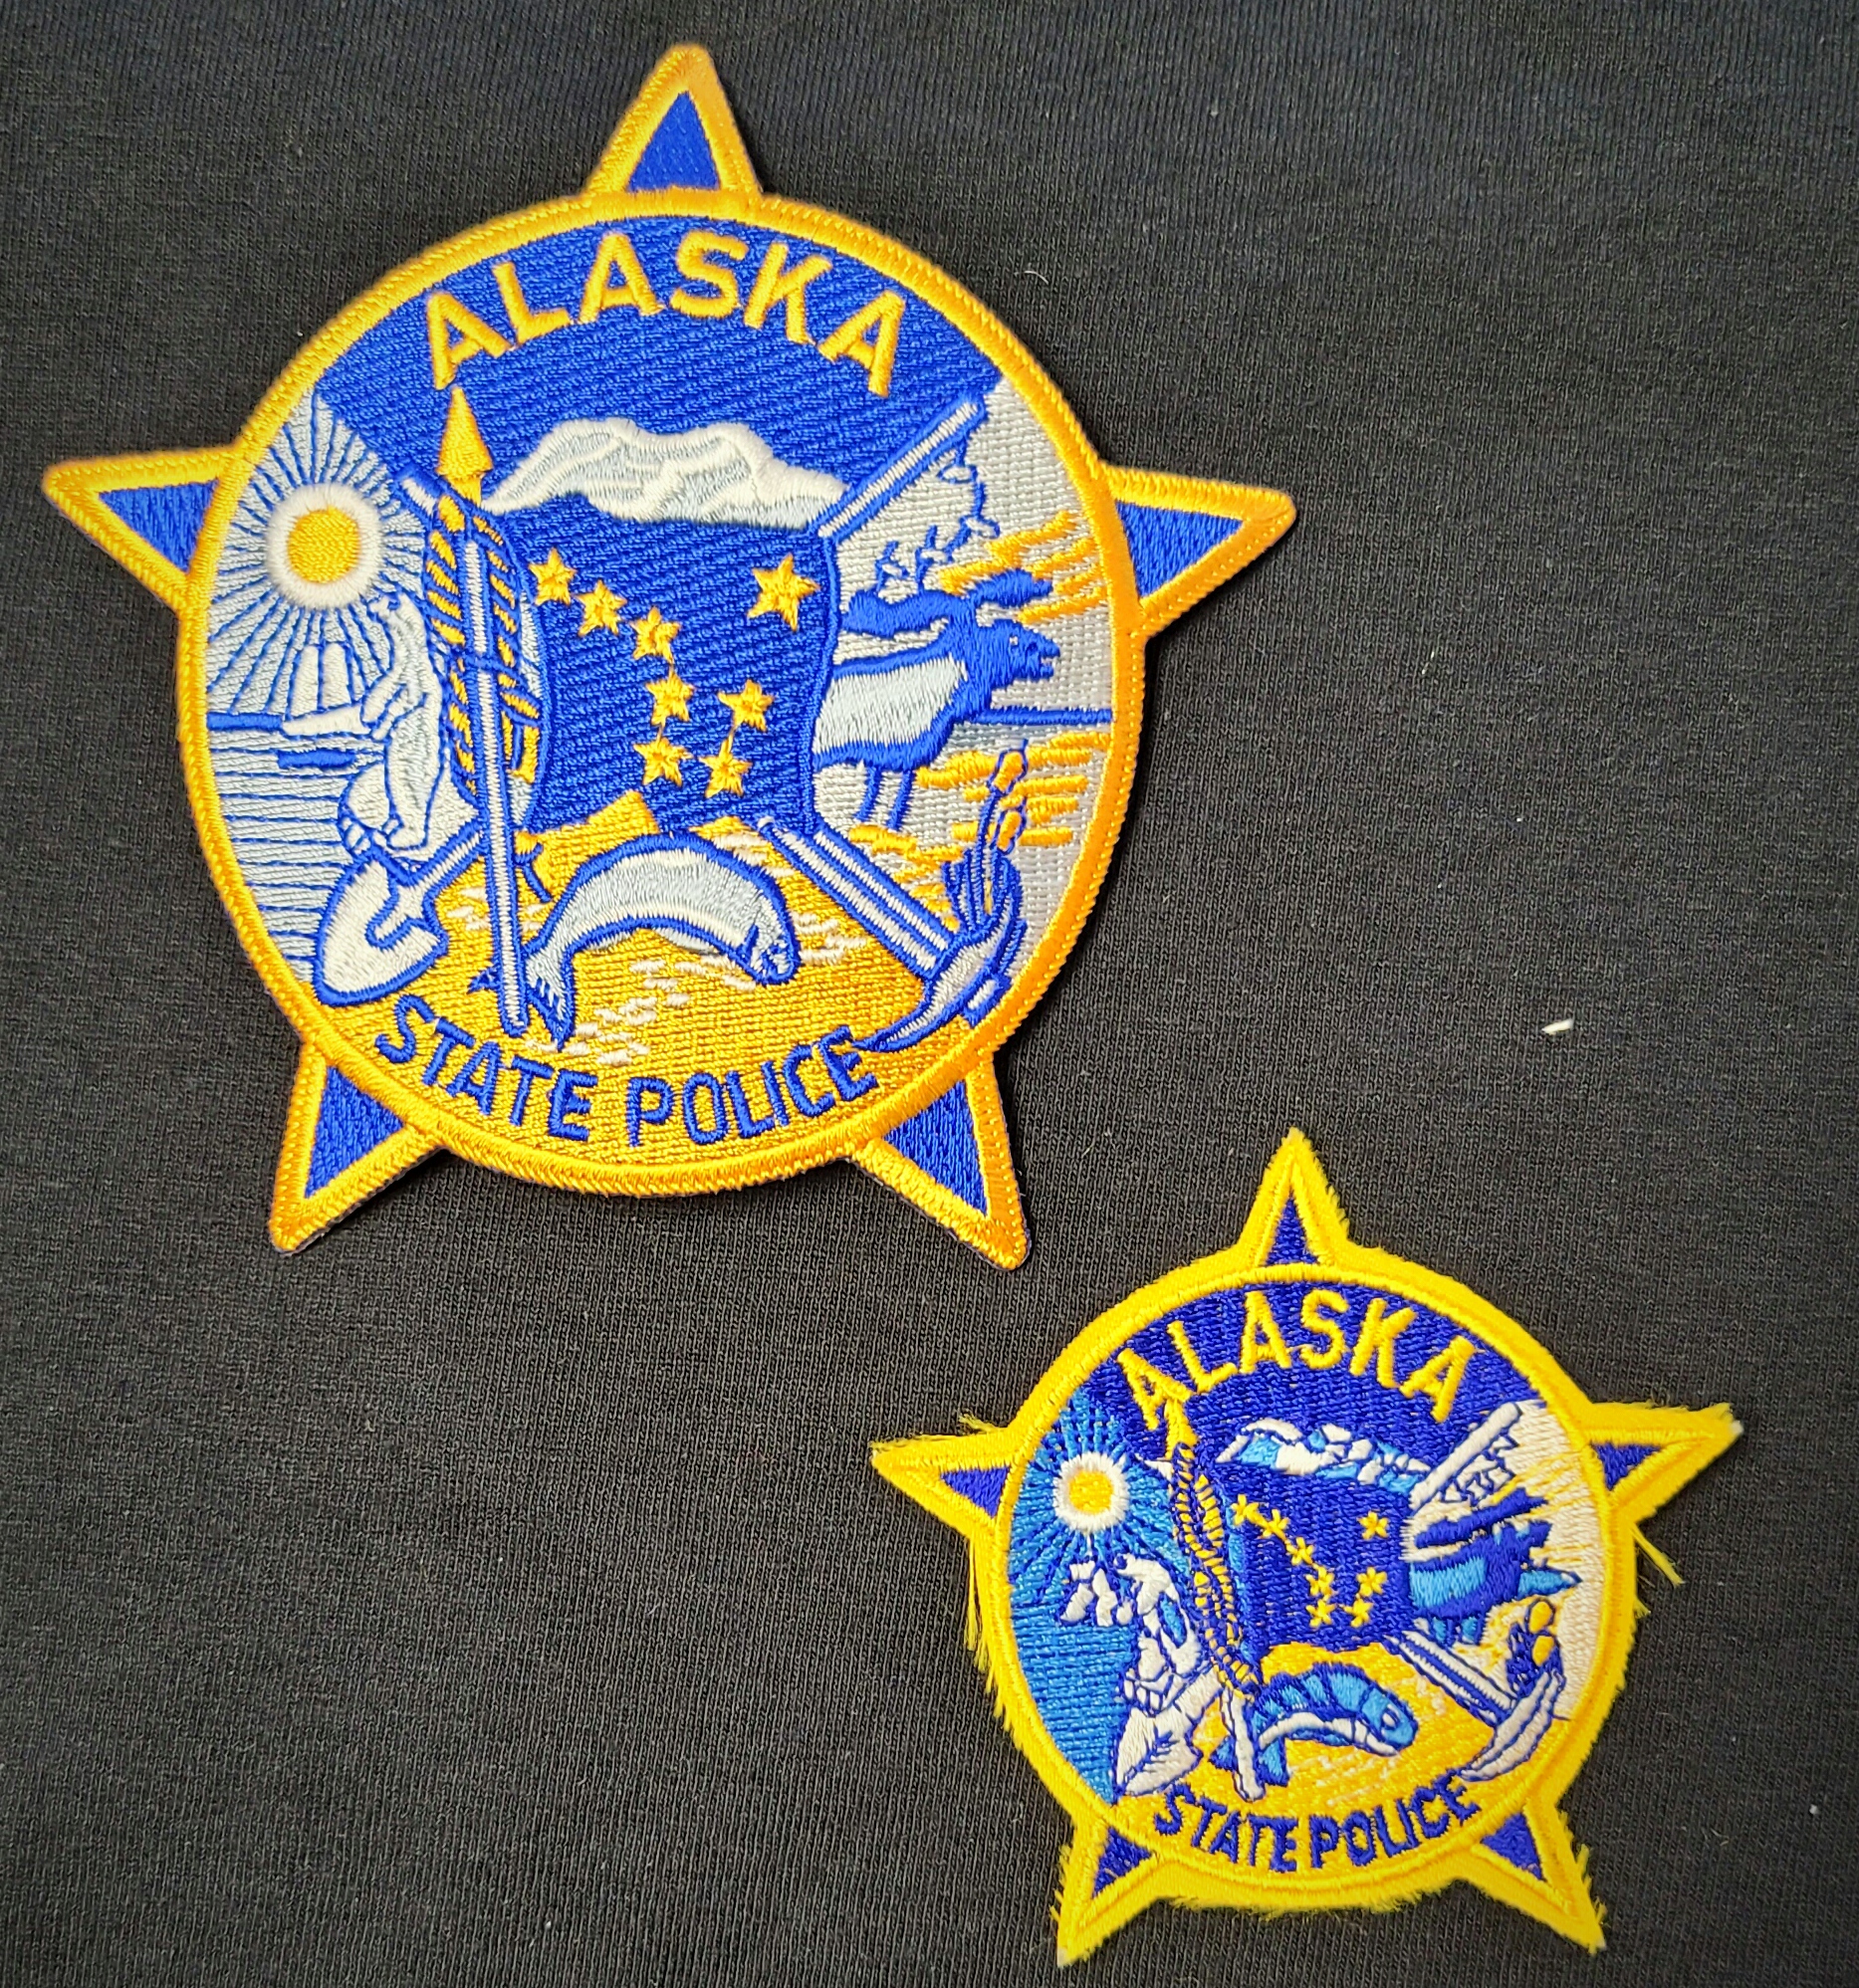 PAUL ALASKA PUBLIC SAFETY POLICE PATCH COLORFUL! ST 